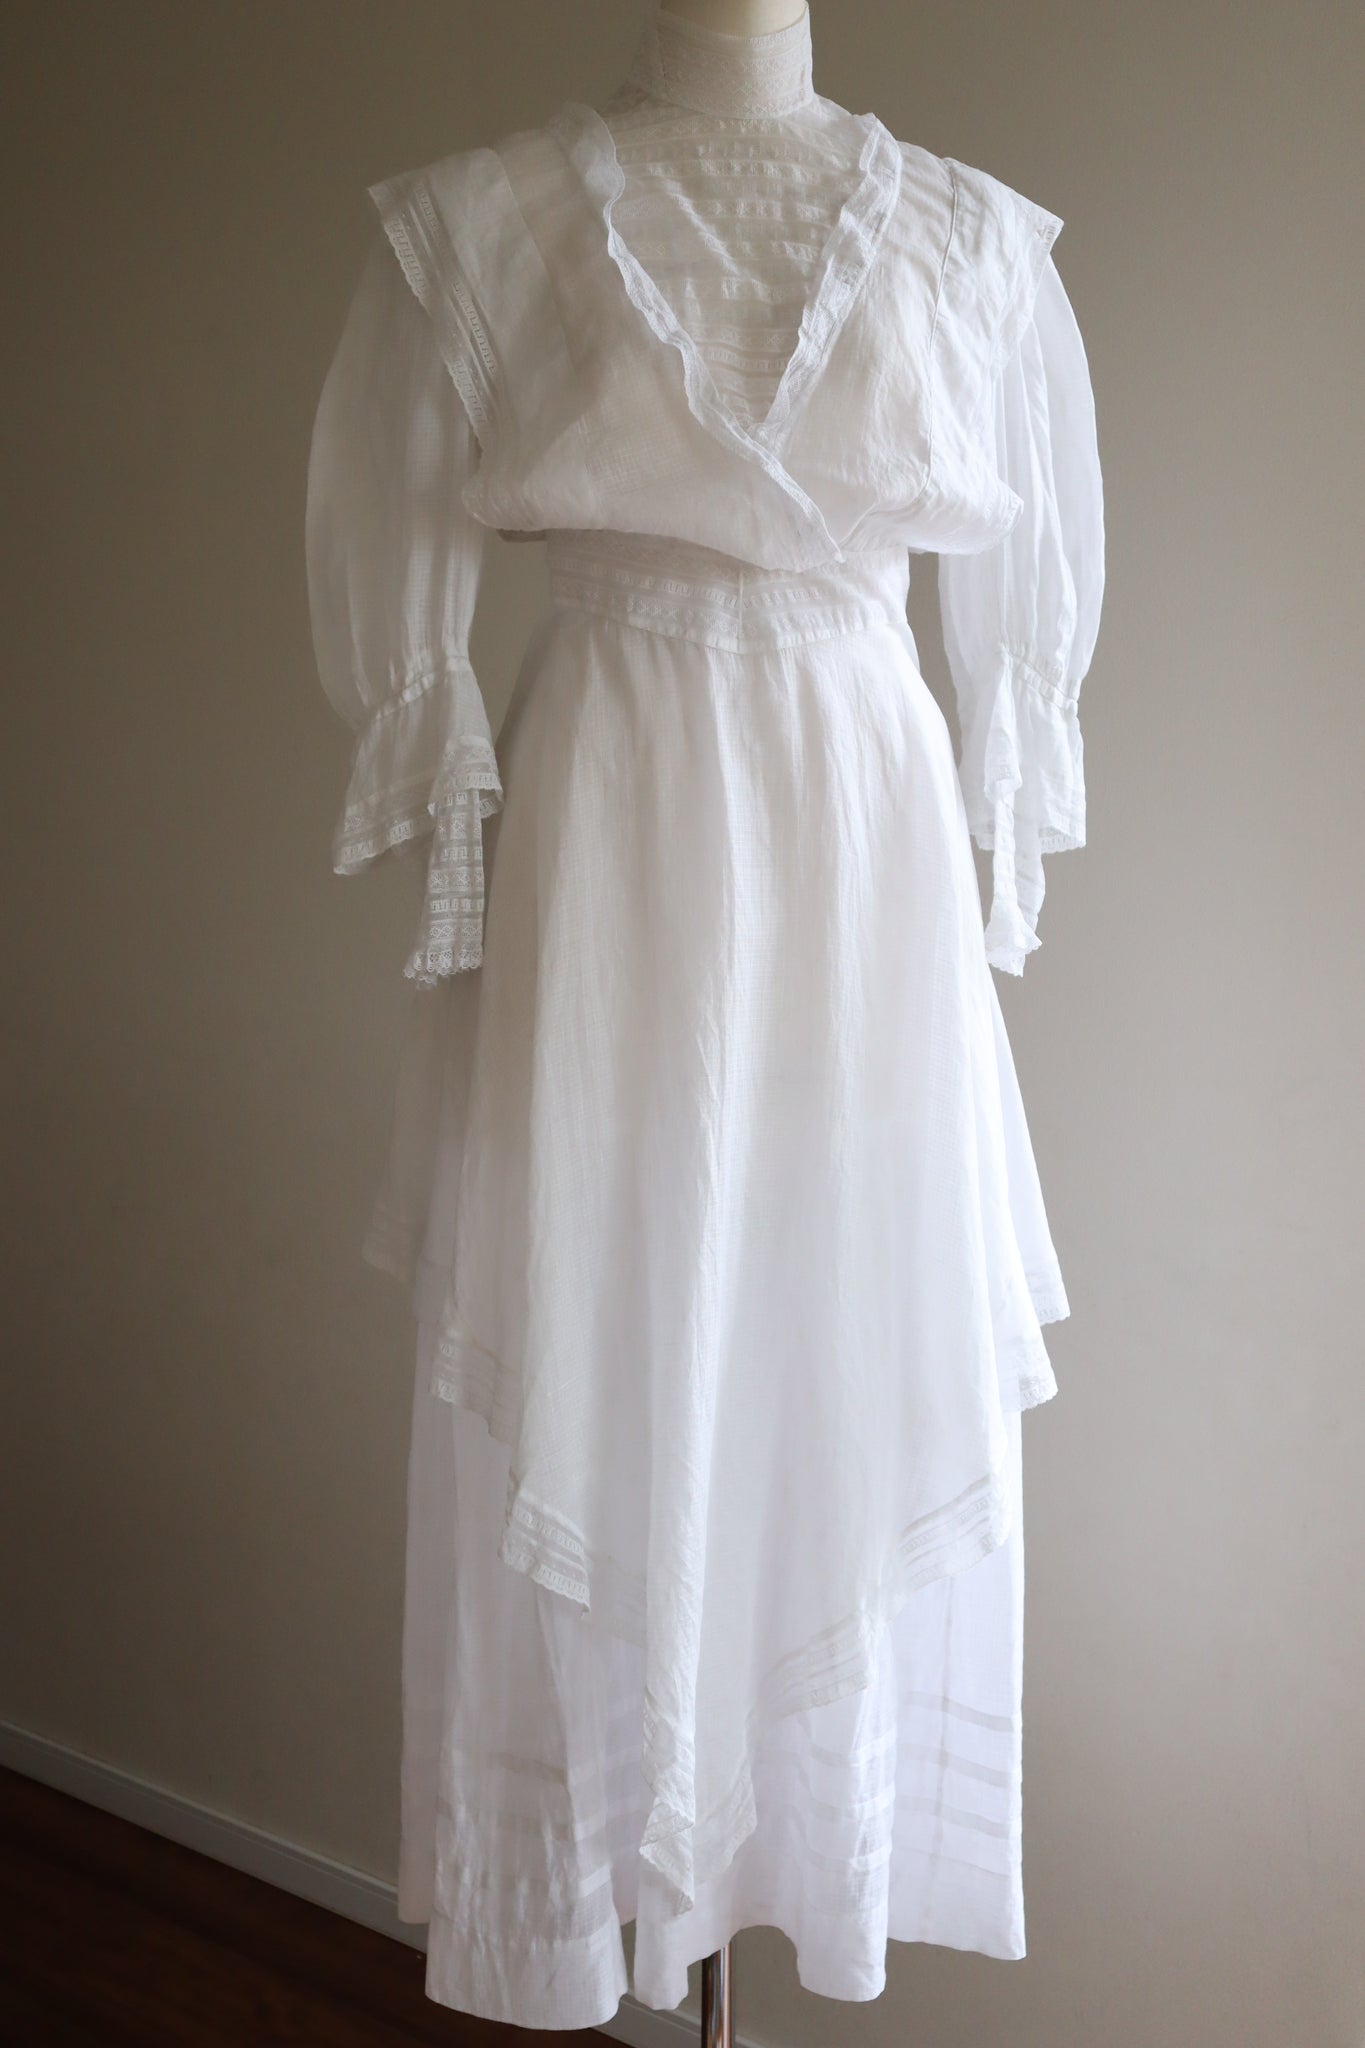 1910s Edwardian Sheer Lawn Cotton Tea Dress Blouse